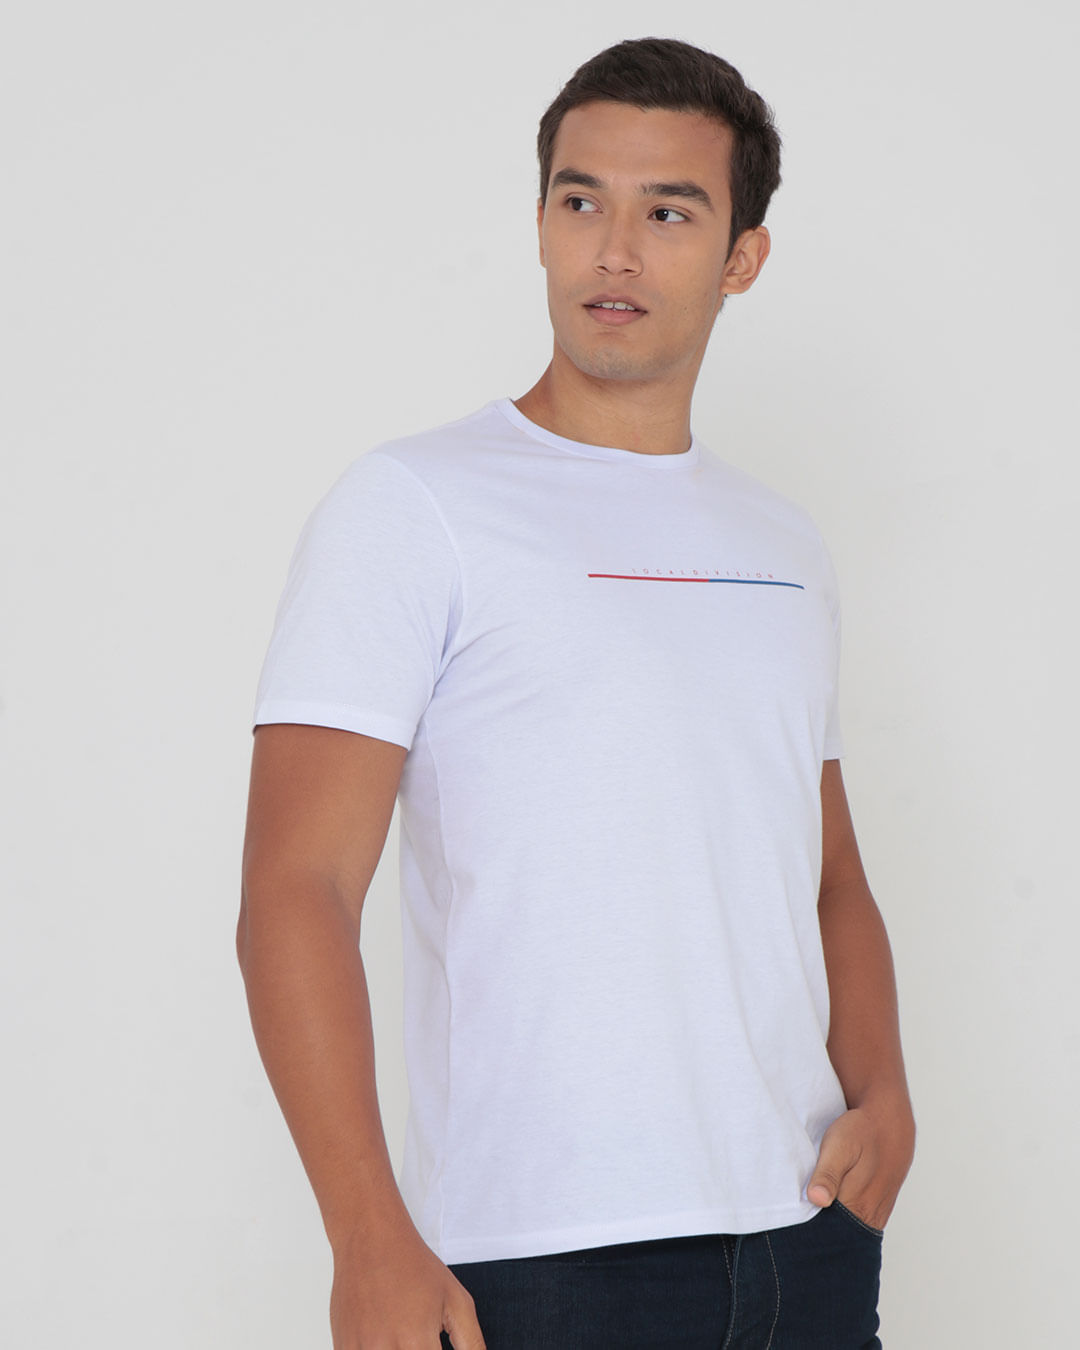 Camiseta-Masculina-Estampa-Authentic-Branca